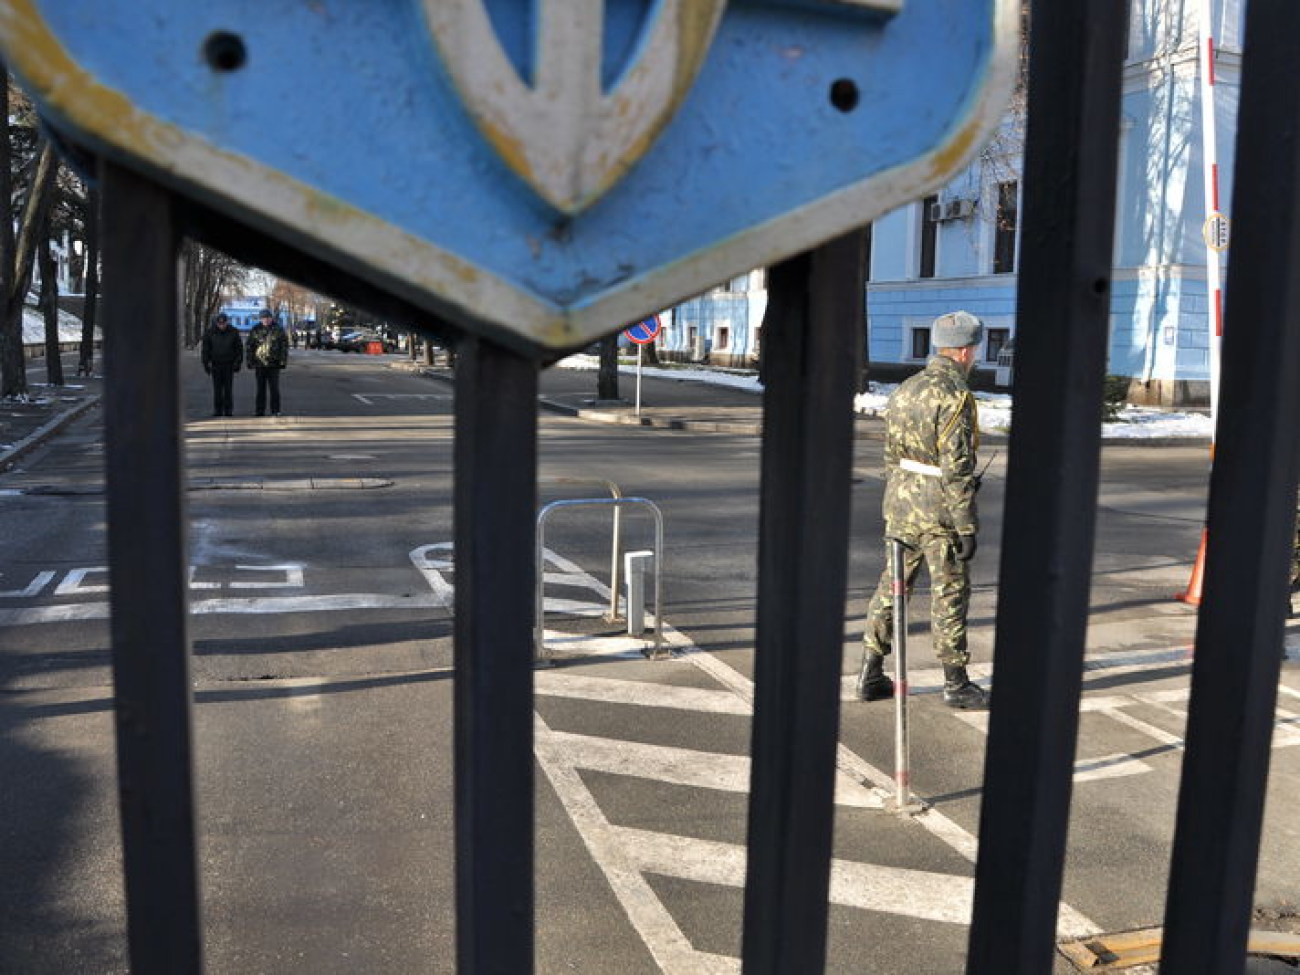 Евромайдановцы пикетировали Министерство обороны, 14 декабря 2013г.